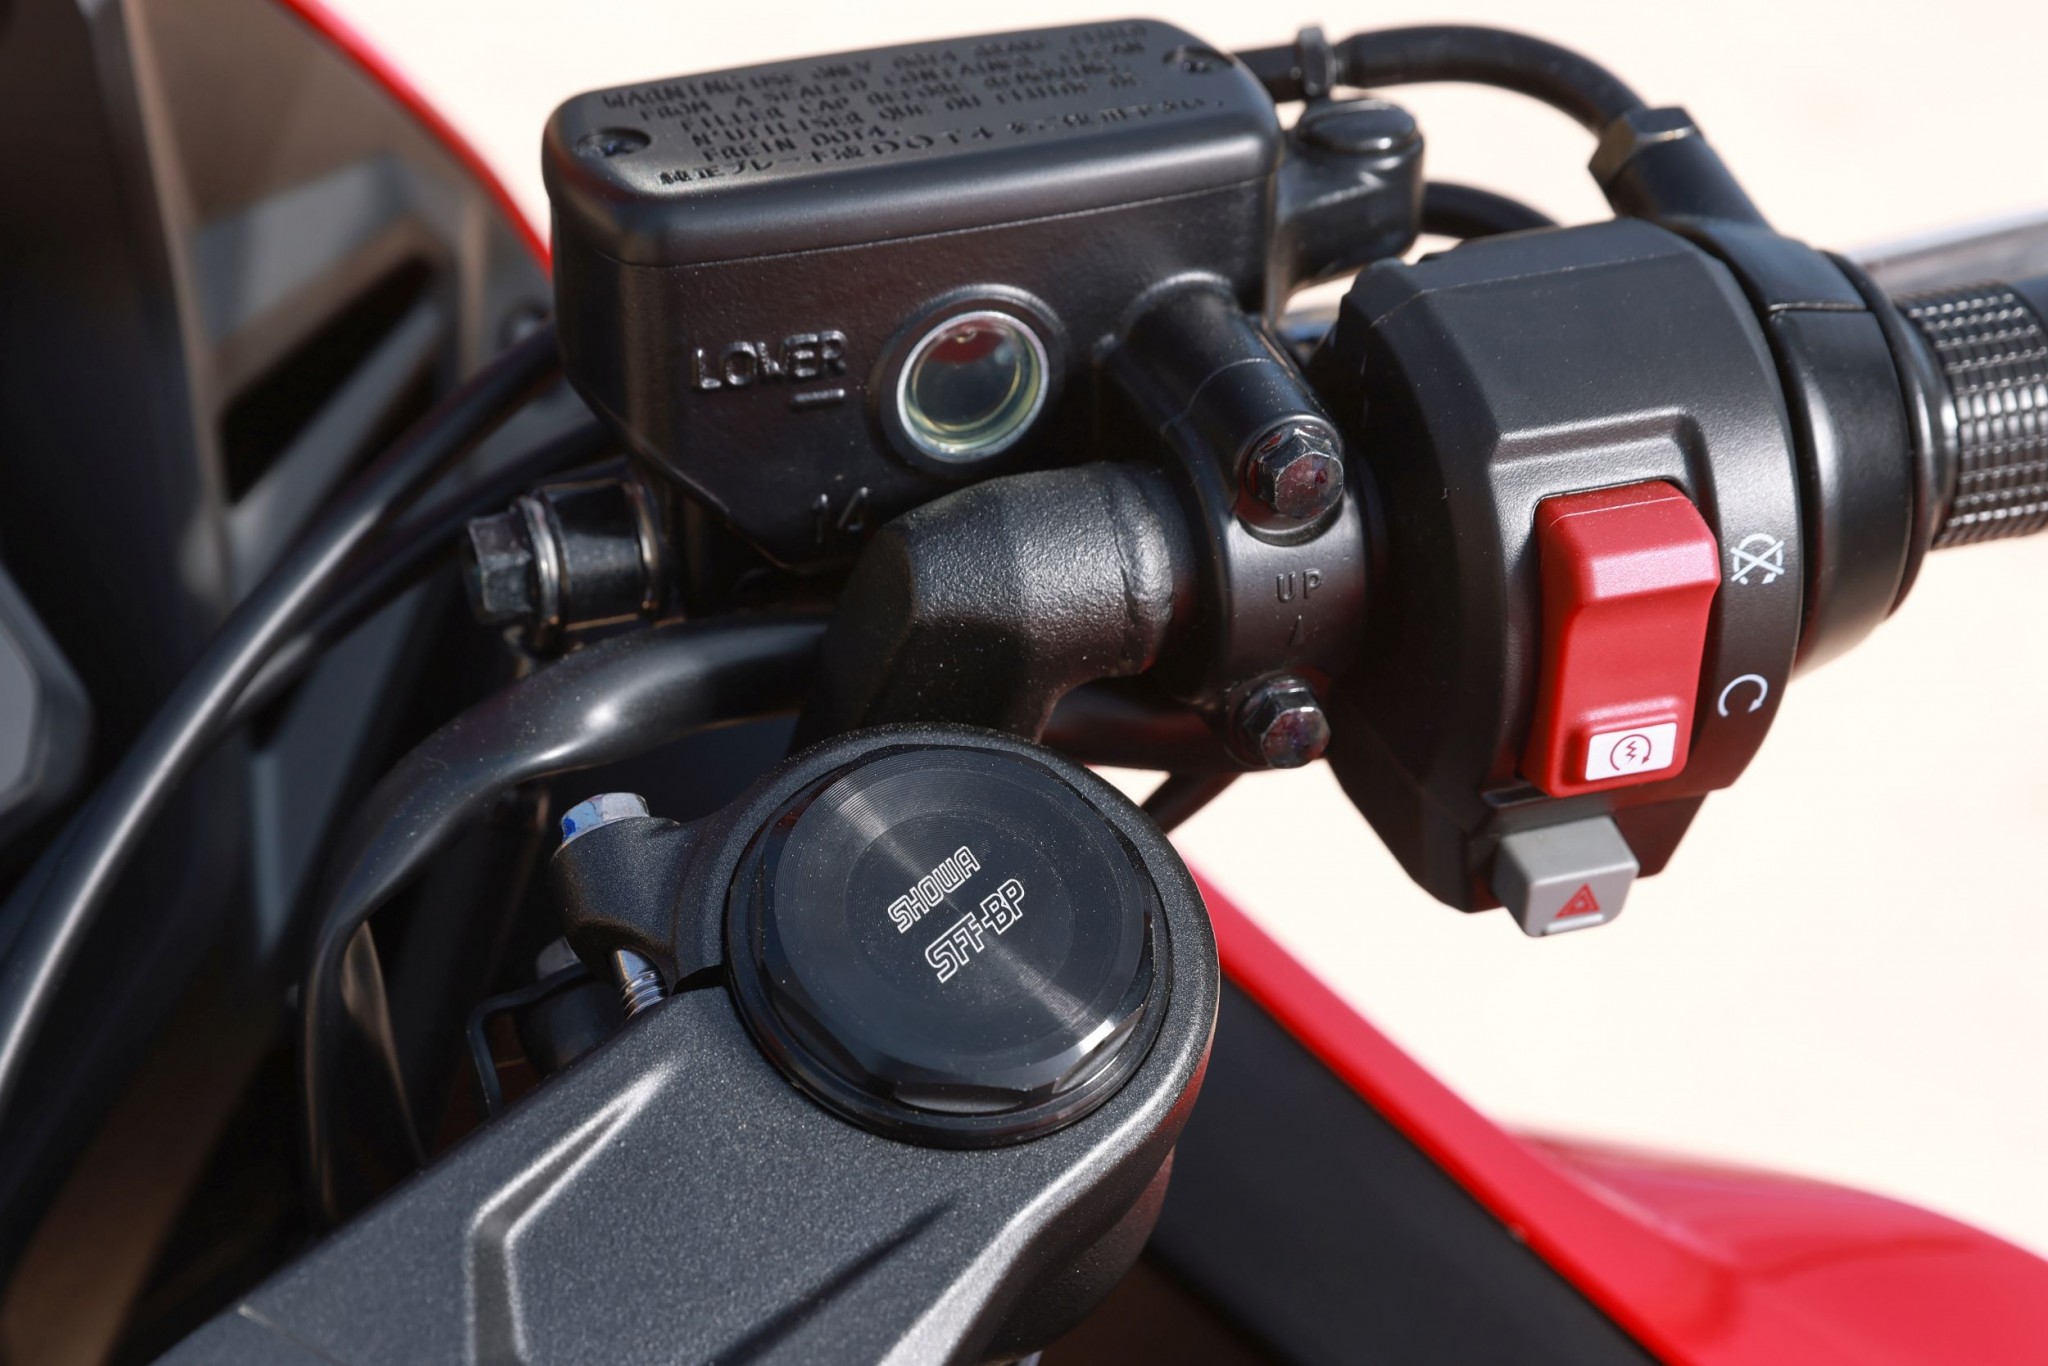 Test elektronske kvačila Honda CBR650R 2024

Honda je nedavno predstavila novu verziju svog popularnog motocikla CBR650R, koji sada dolazi sa elektronskim kvačilom, poznatim kao E-Clutch. Ova inovacija obećava da će olakšati vožnju omogućavajući vozačima da menjaju brzine bez potrebe za ručnim korišćenjem kvačila. 

Elektronsko kvačilo funkcioniše tako što automatski reguliše pritisak potreban za aktiviranje kvačila, što omogućava glatke promene brzina bez prekida u isporuci snage. Ovo je posebno korisno pri vožnji u gradu, gde česte promene brzina mogu biti naporne i otežavaju koncentraciju na saobraćaj.

Testiranje ovog sistema pokazalo je da E-Clutch ne samo da olakšava upravljanje motociklom, već i povećava sigurnost vožnje. Vozači mogu da se fokusiraju na okolinu bez brige o mehaničkim aspektima vožnje, što je posebno važno za manje iskusne vozače.

Honda CBR650R sa elektronskim kvačilom biće dostupna na tržištu od 2024. godine i očekuje se da će privući veliki broj kupaca, kako iskusnih tako i onih koji tek ulaze u svet motociklizma. Ovaj model predstavlja značajan korak napred u tehnologiji motocikala i potencijalno postavlja nove standarde u industriji. - Слика 56